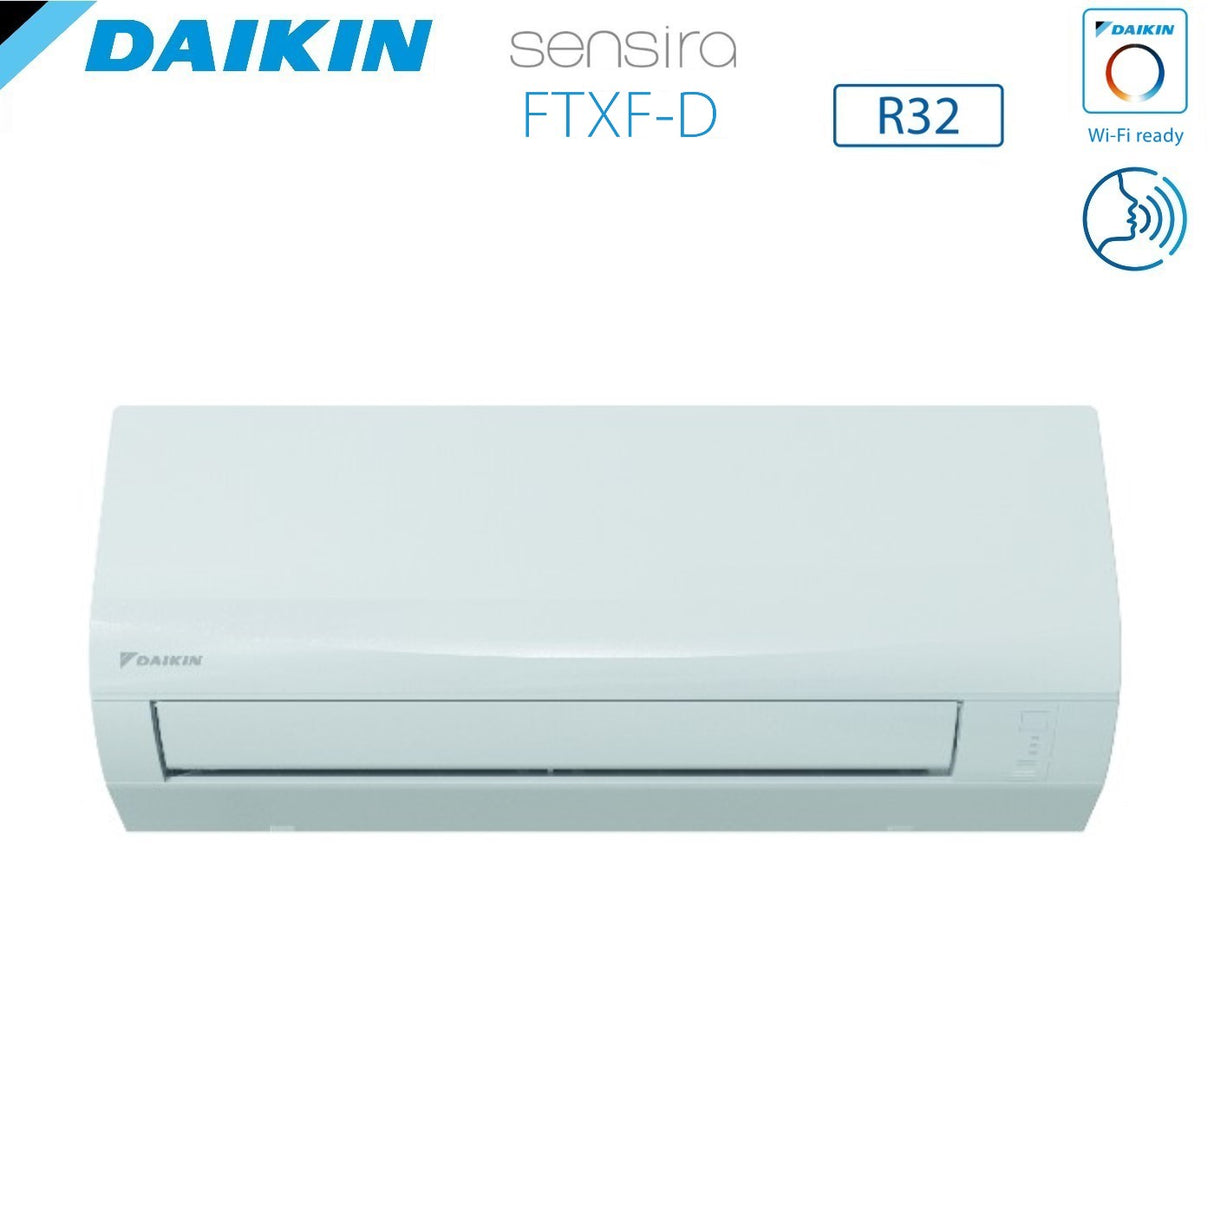 immagine-3-daikin-climatizzatore-condizionatore-daikin-inverter-serie-ecoplus-sensira-12000-btu-ftxf35cd-r-32-wi-fi-optional-classe-a